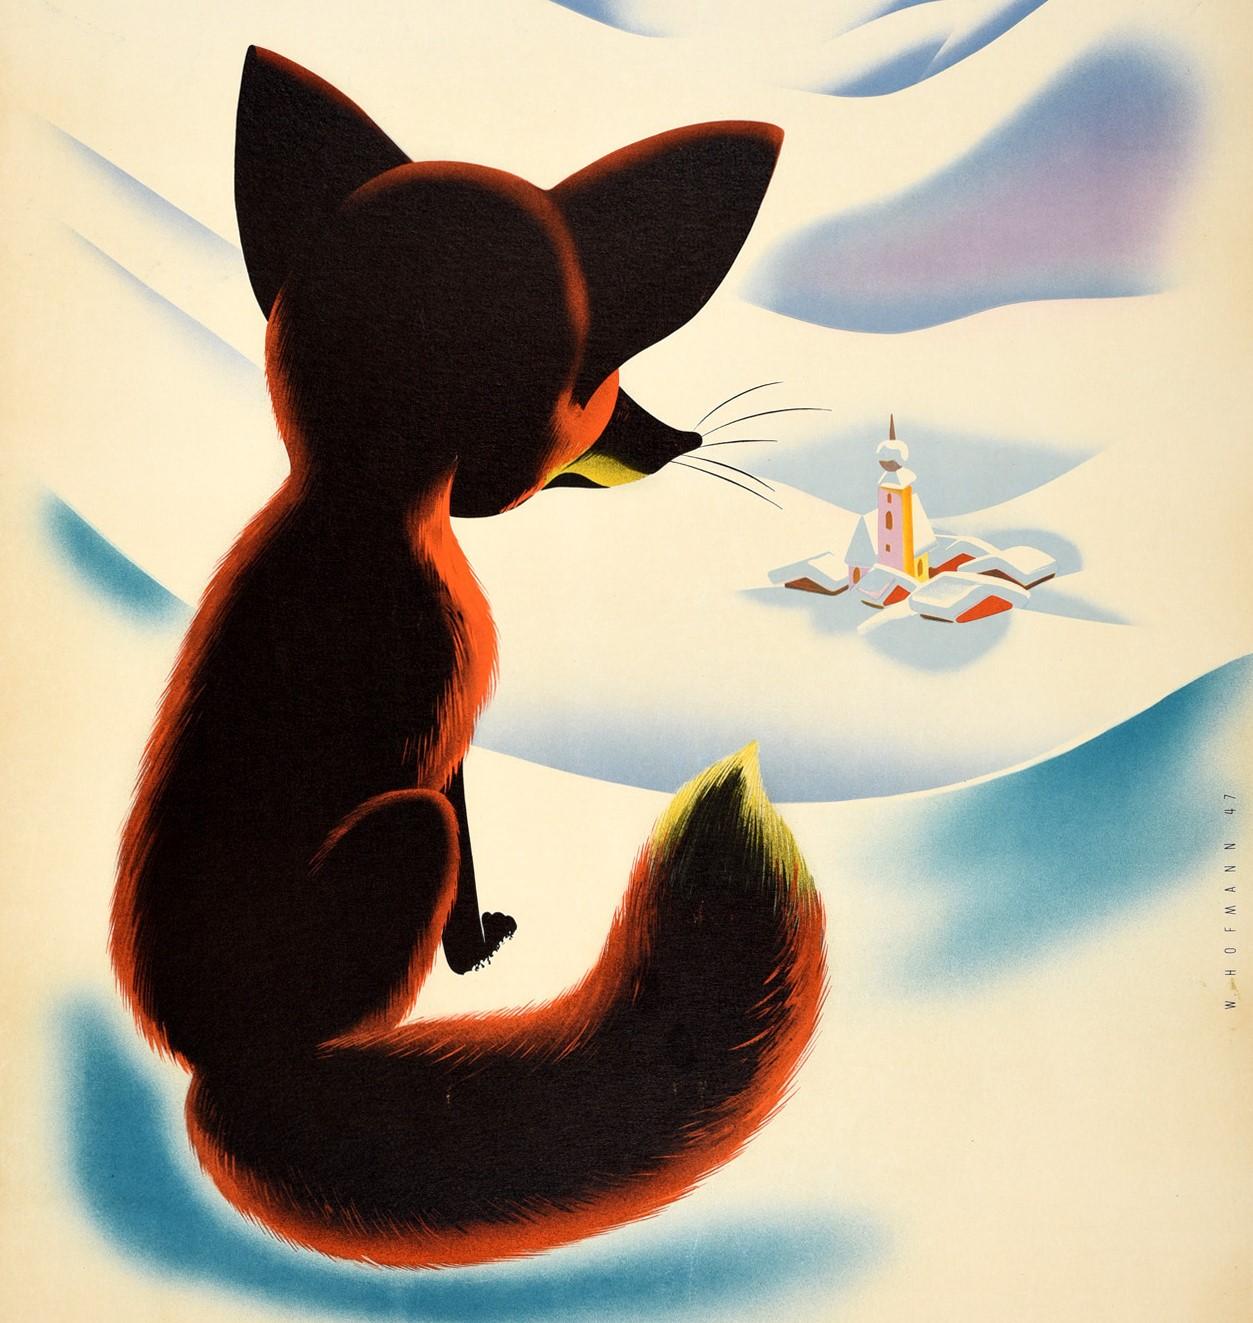 Original Vintage Winter Travel Poster Osterreich Austria Fox Snow Mountains View - Print by W. Hofmann